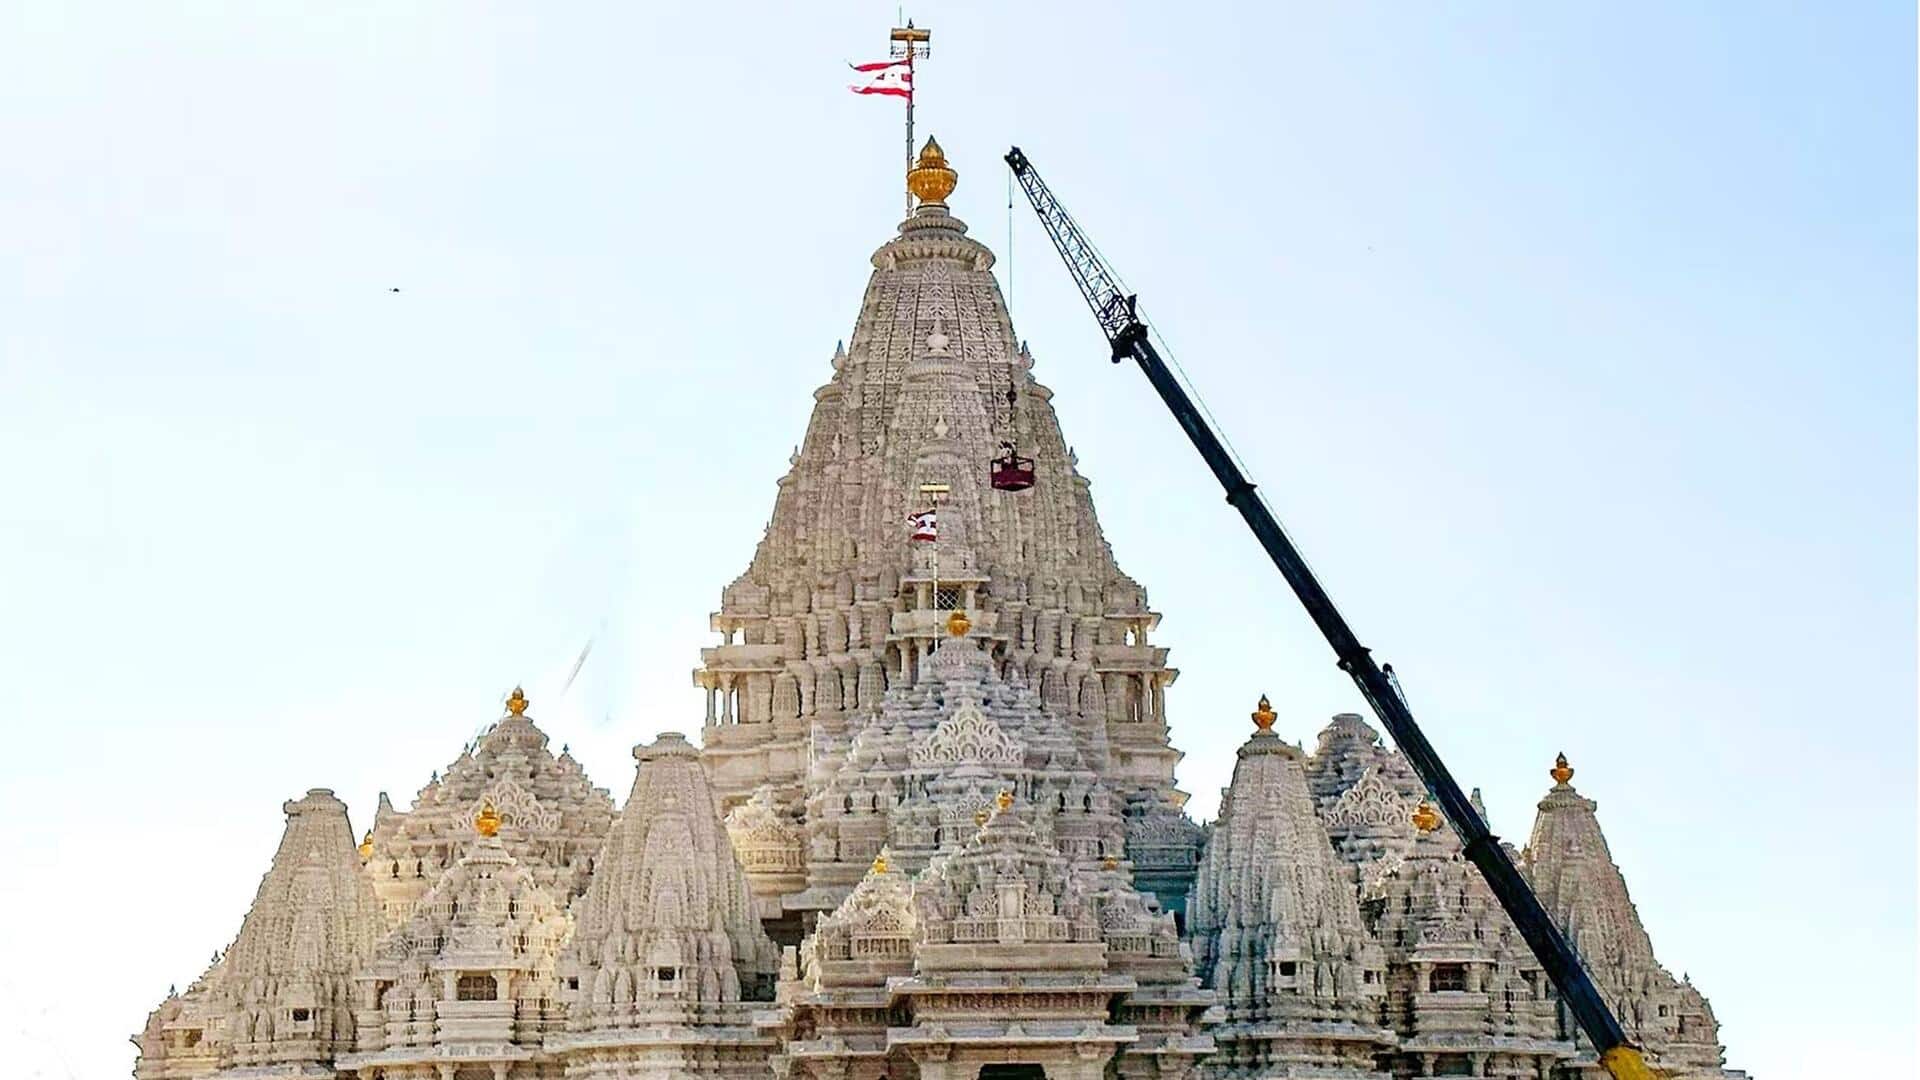 अमेरिका में होगा दुनिया के दूसरे सबसे बड़े हिंदू मंदिर का उद्घाटन, जानिए इसकी खासियत